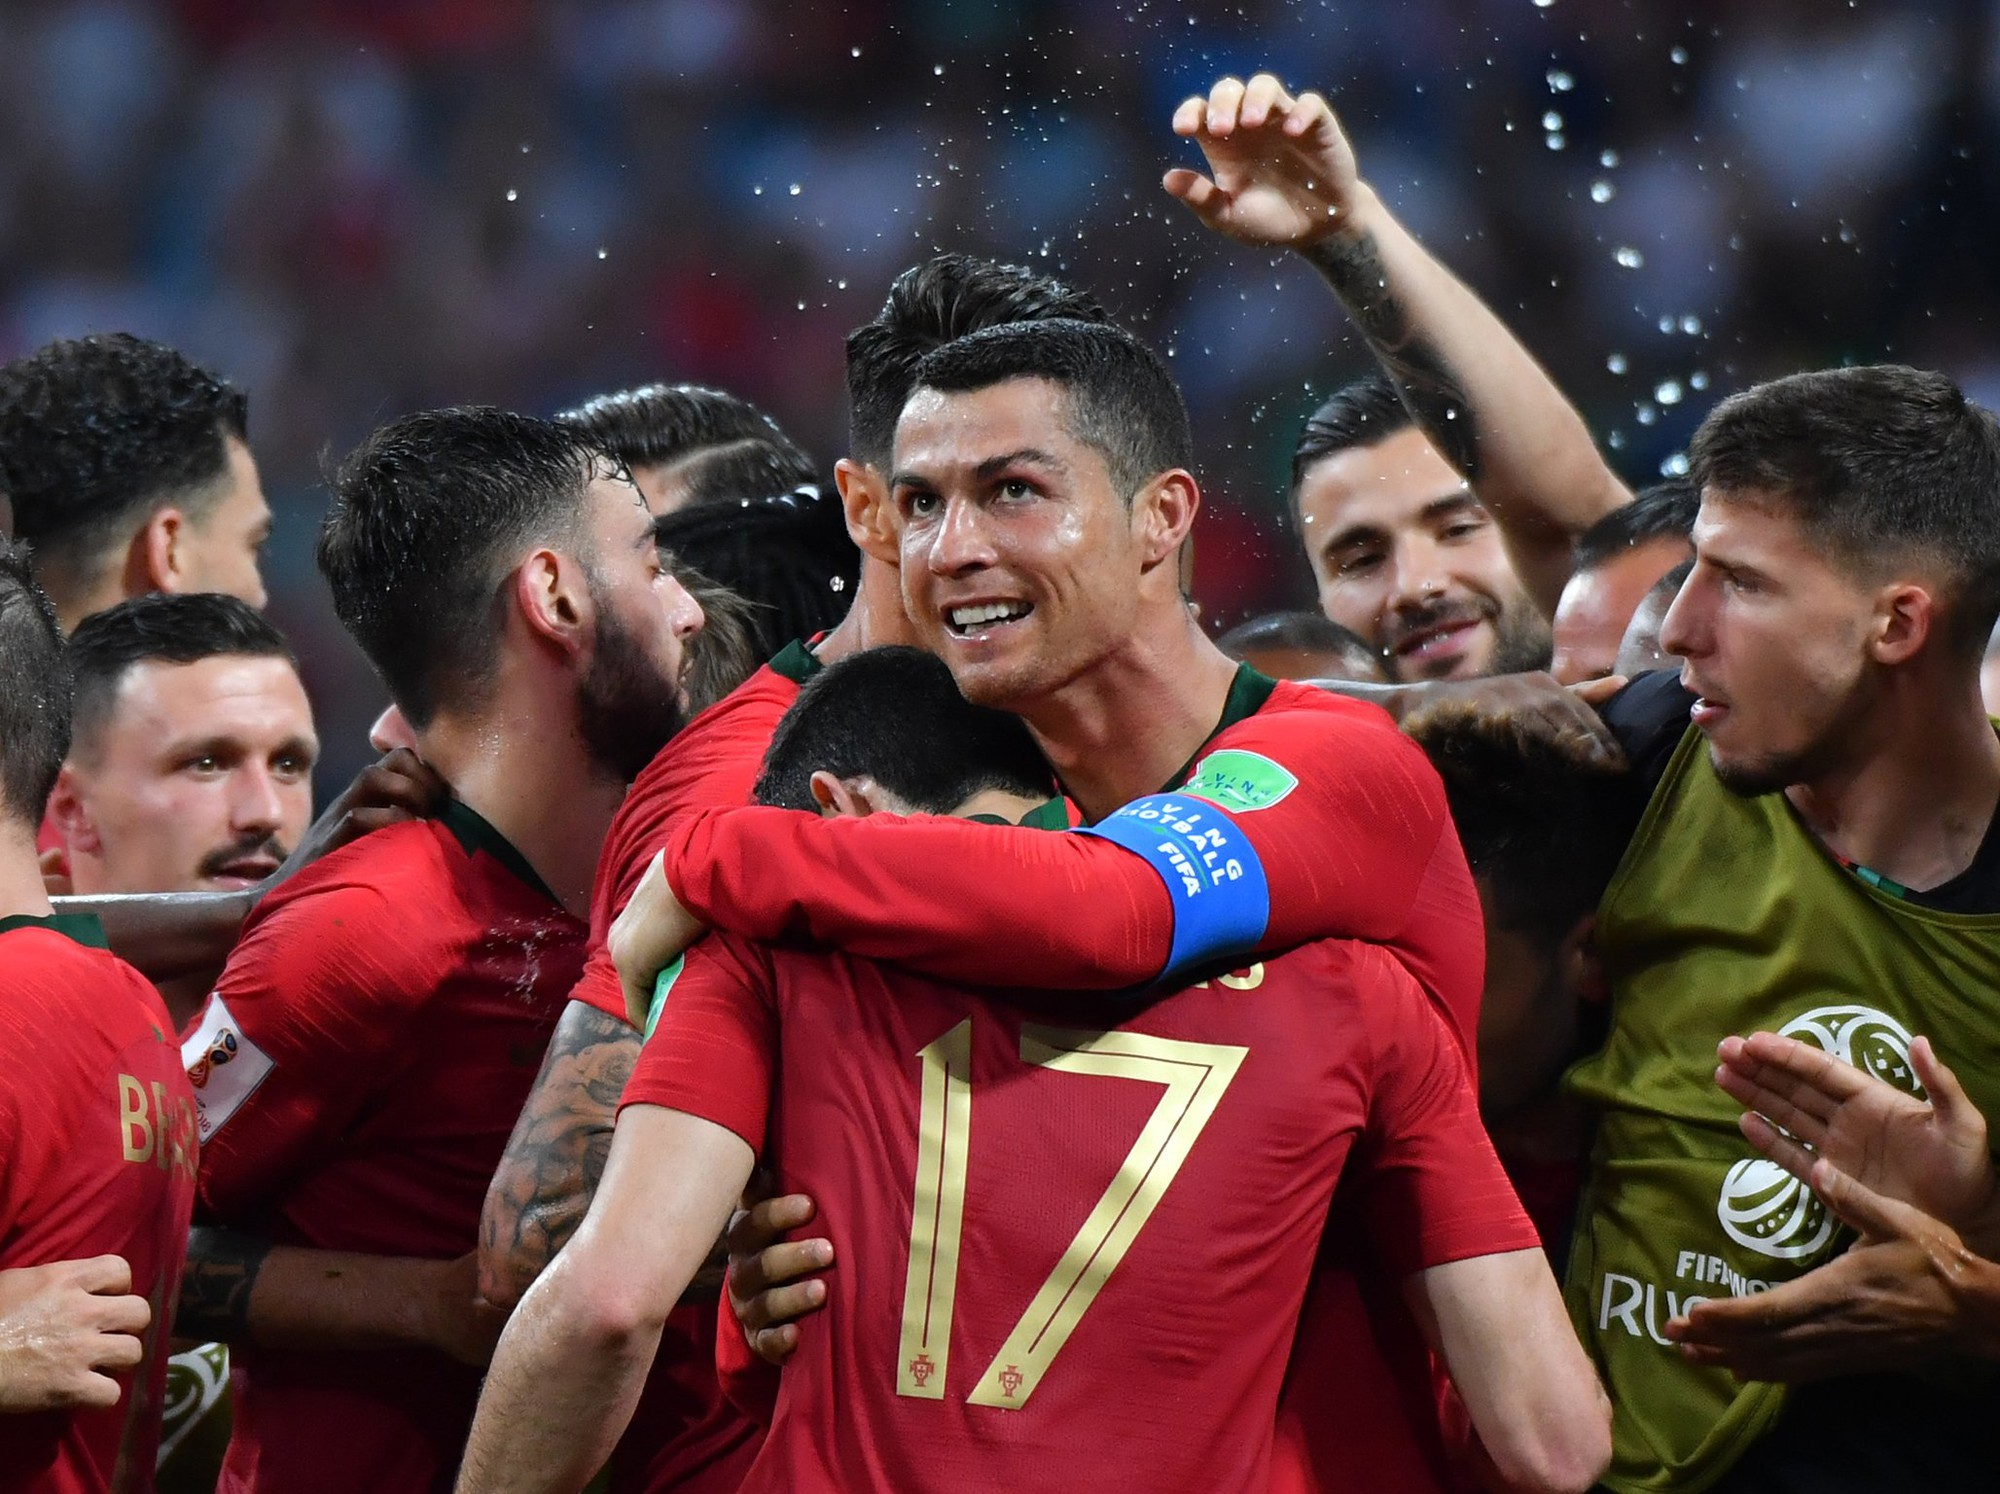 Chuyên viên đặc biệt giúp Ronaldo hồi phục thần tốc để chạy ầm ầm ở World Cup - Ảnh 1.